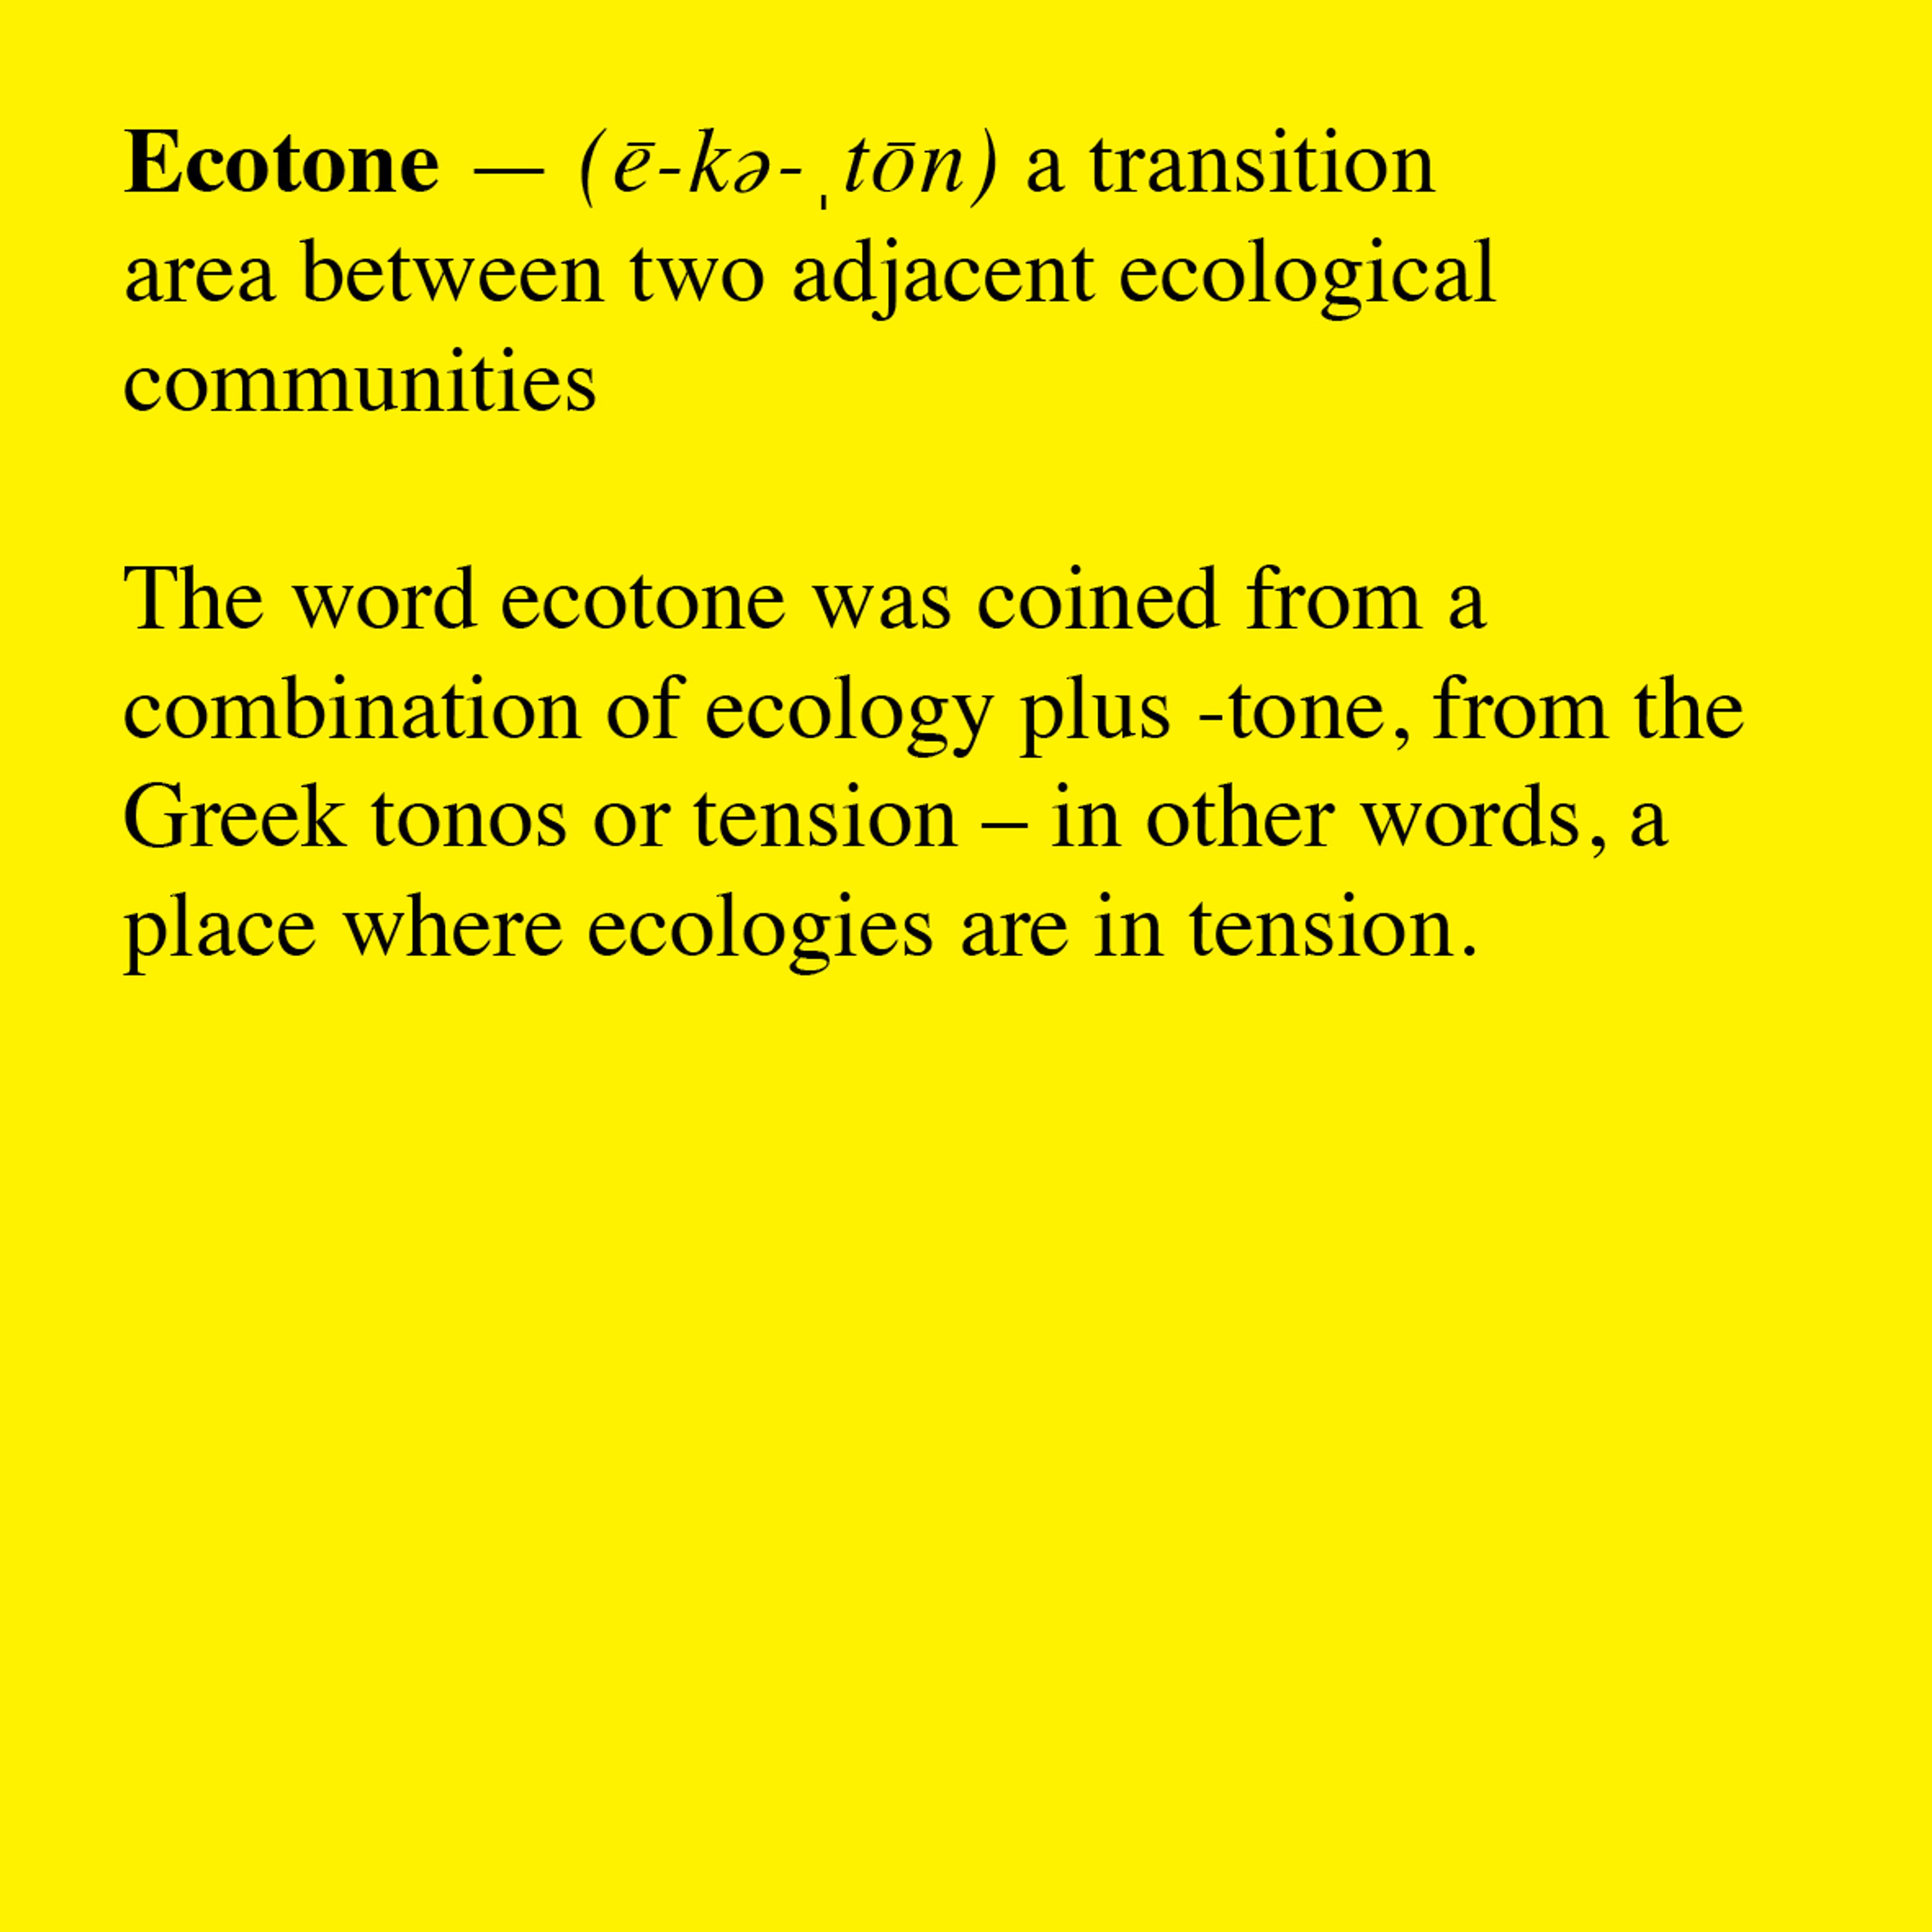 Dictionary: Ecotone